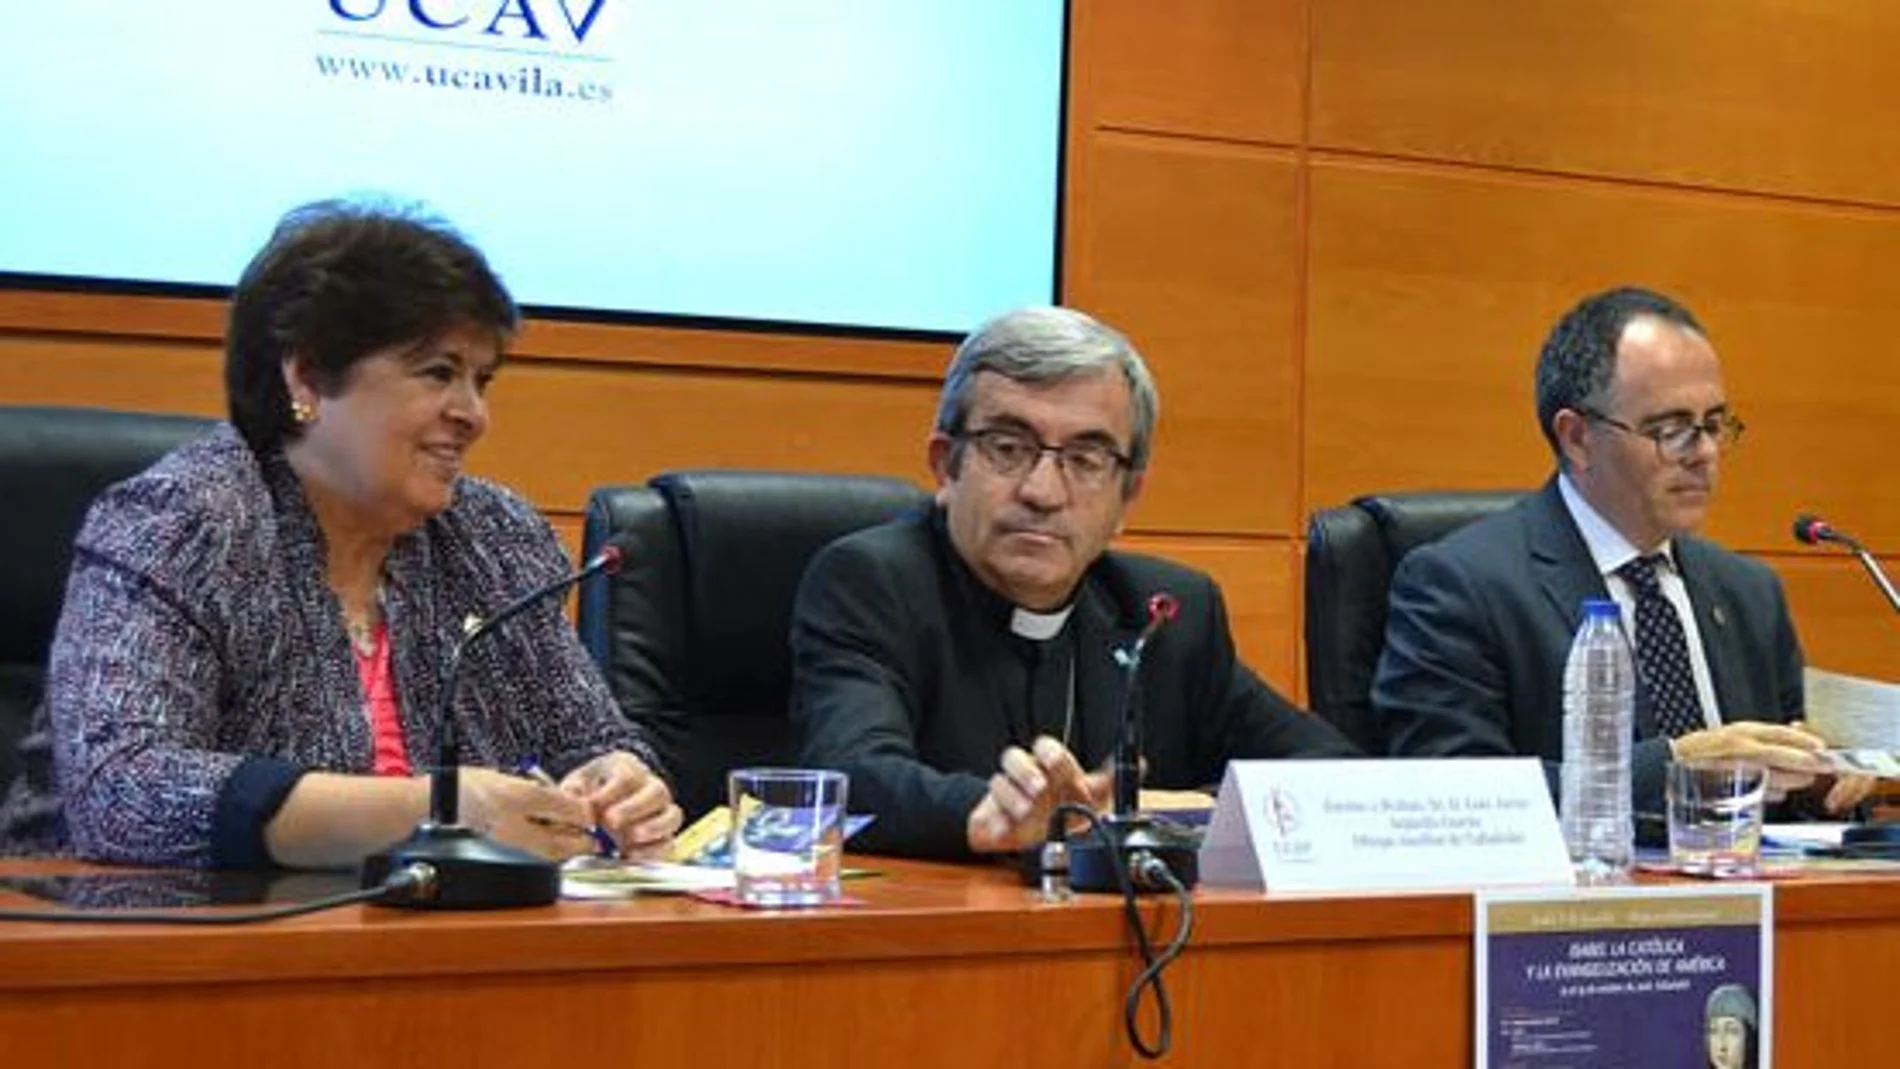 La rectora de la UCAV, María del Rosario Sáez Yuguero, y el obispo Auxiliar de Valladolid, Luis Arrgüello, presentan el Simposio